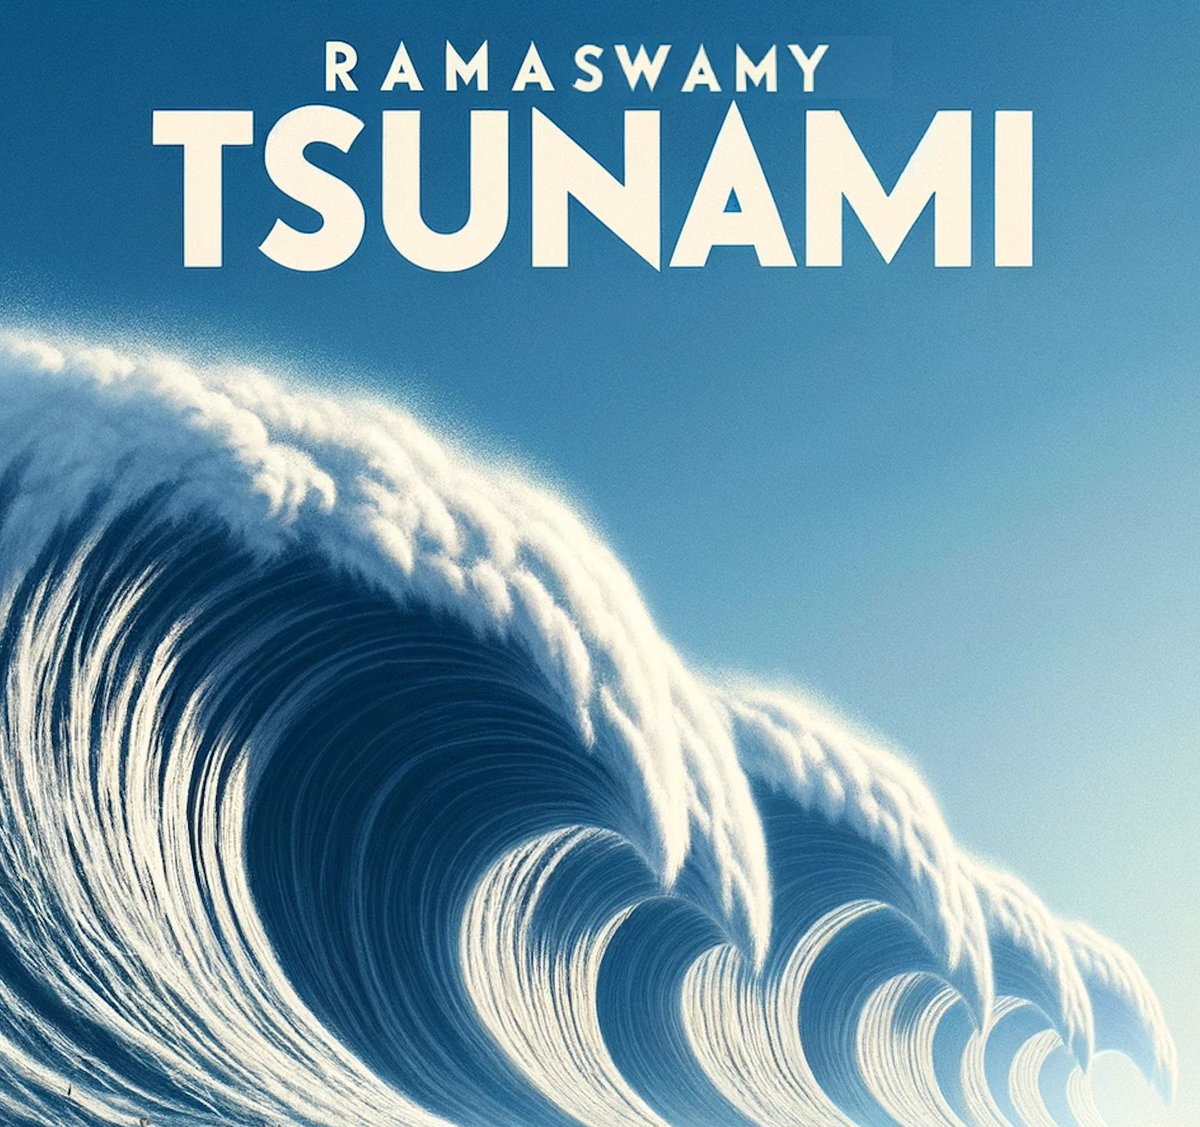 #RamaswamyTsunami